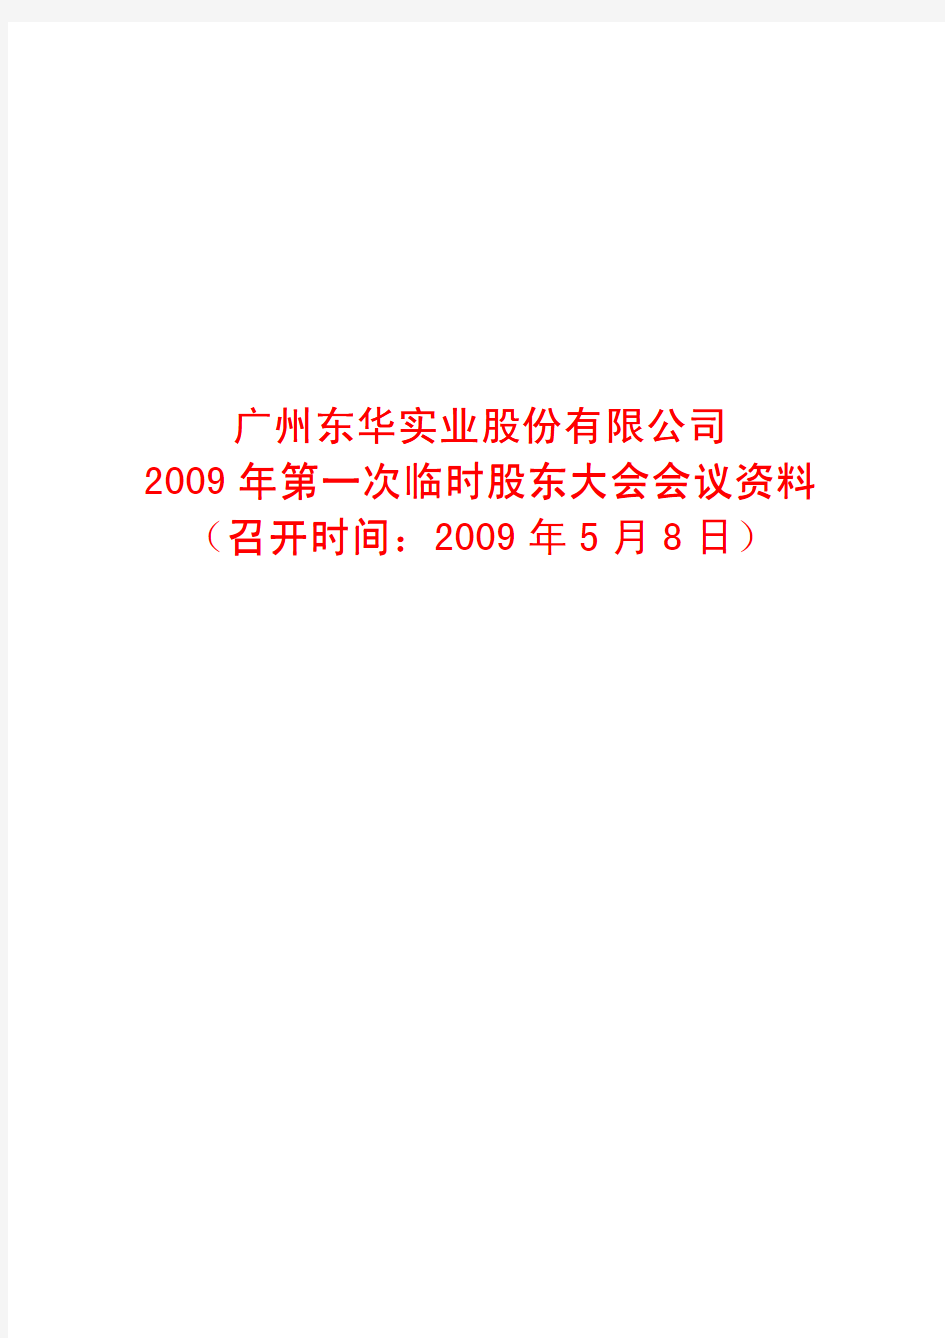 广州东华实业股份有限公司2009年第一次临时股东大会会议资料